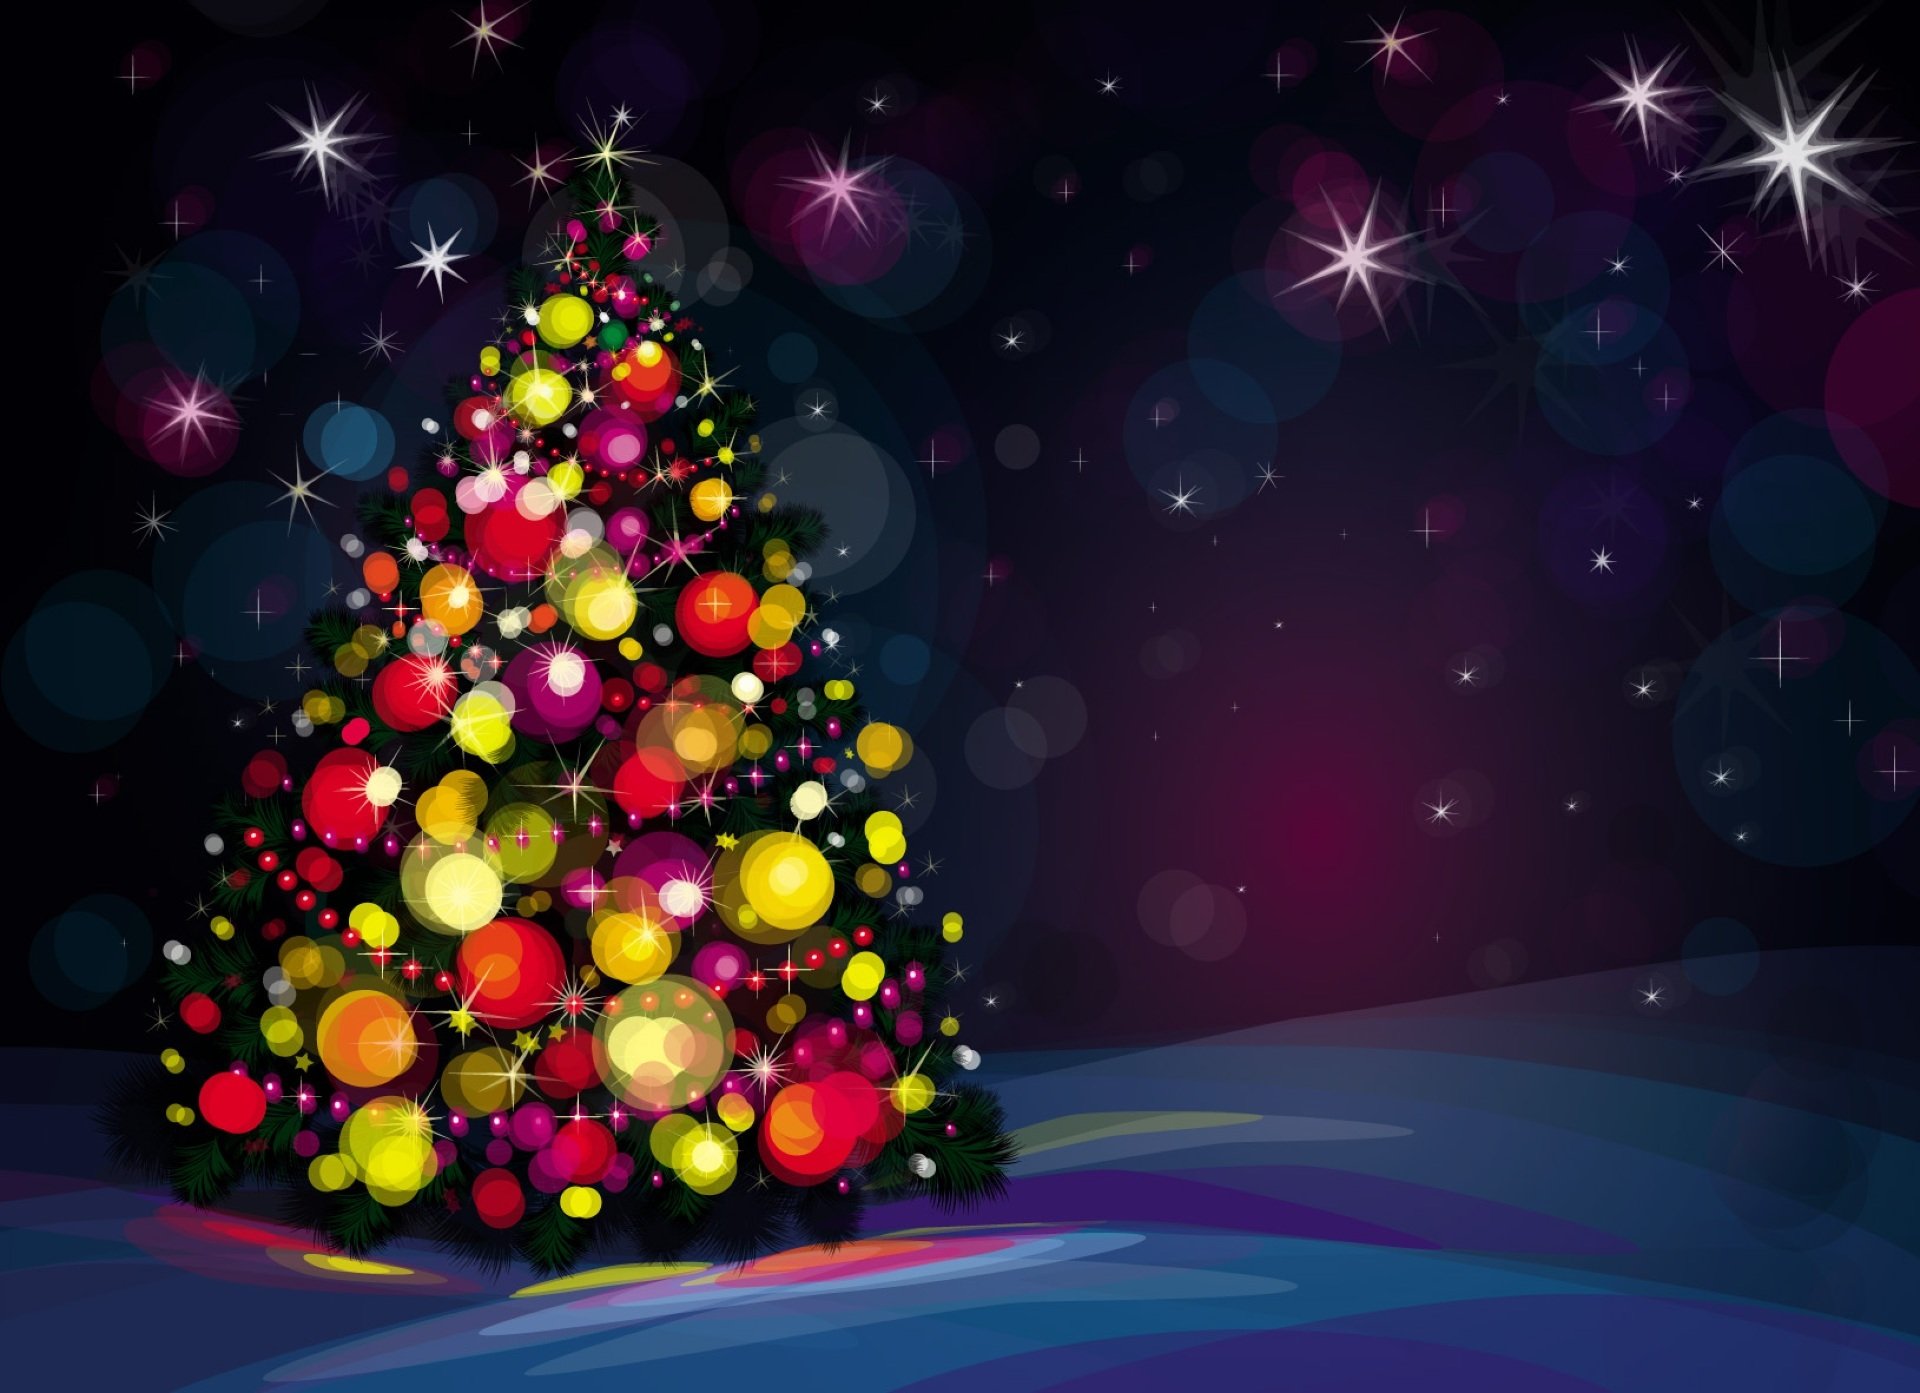 papel pintado noel,árbol de navidad,decoración navideña,navidad,nochebuena,árbol